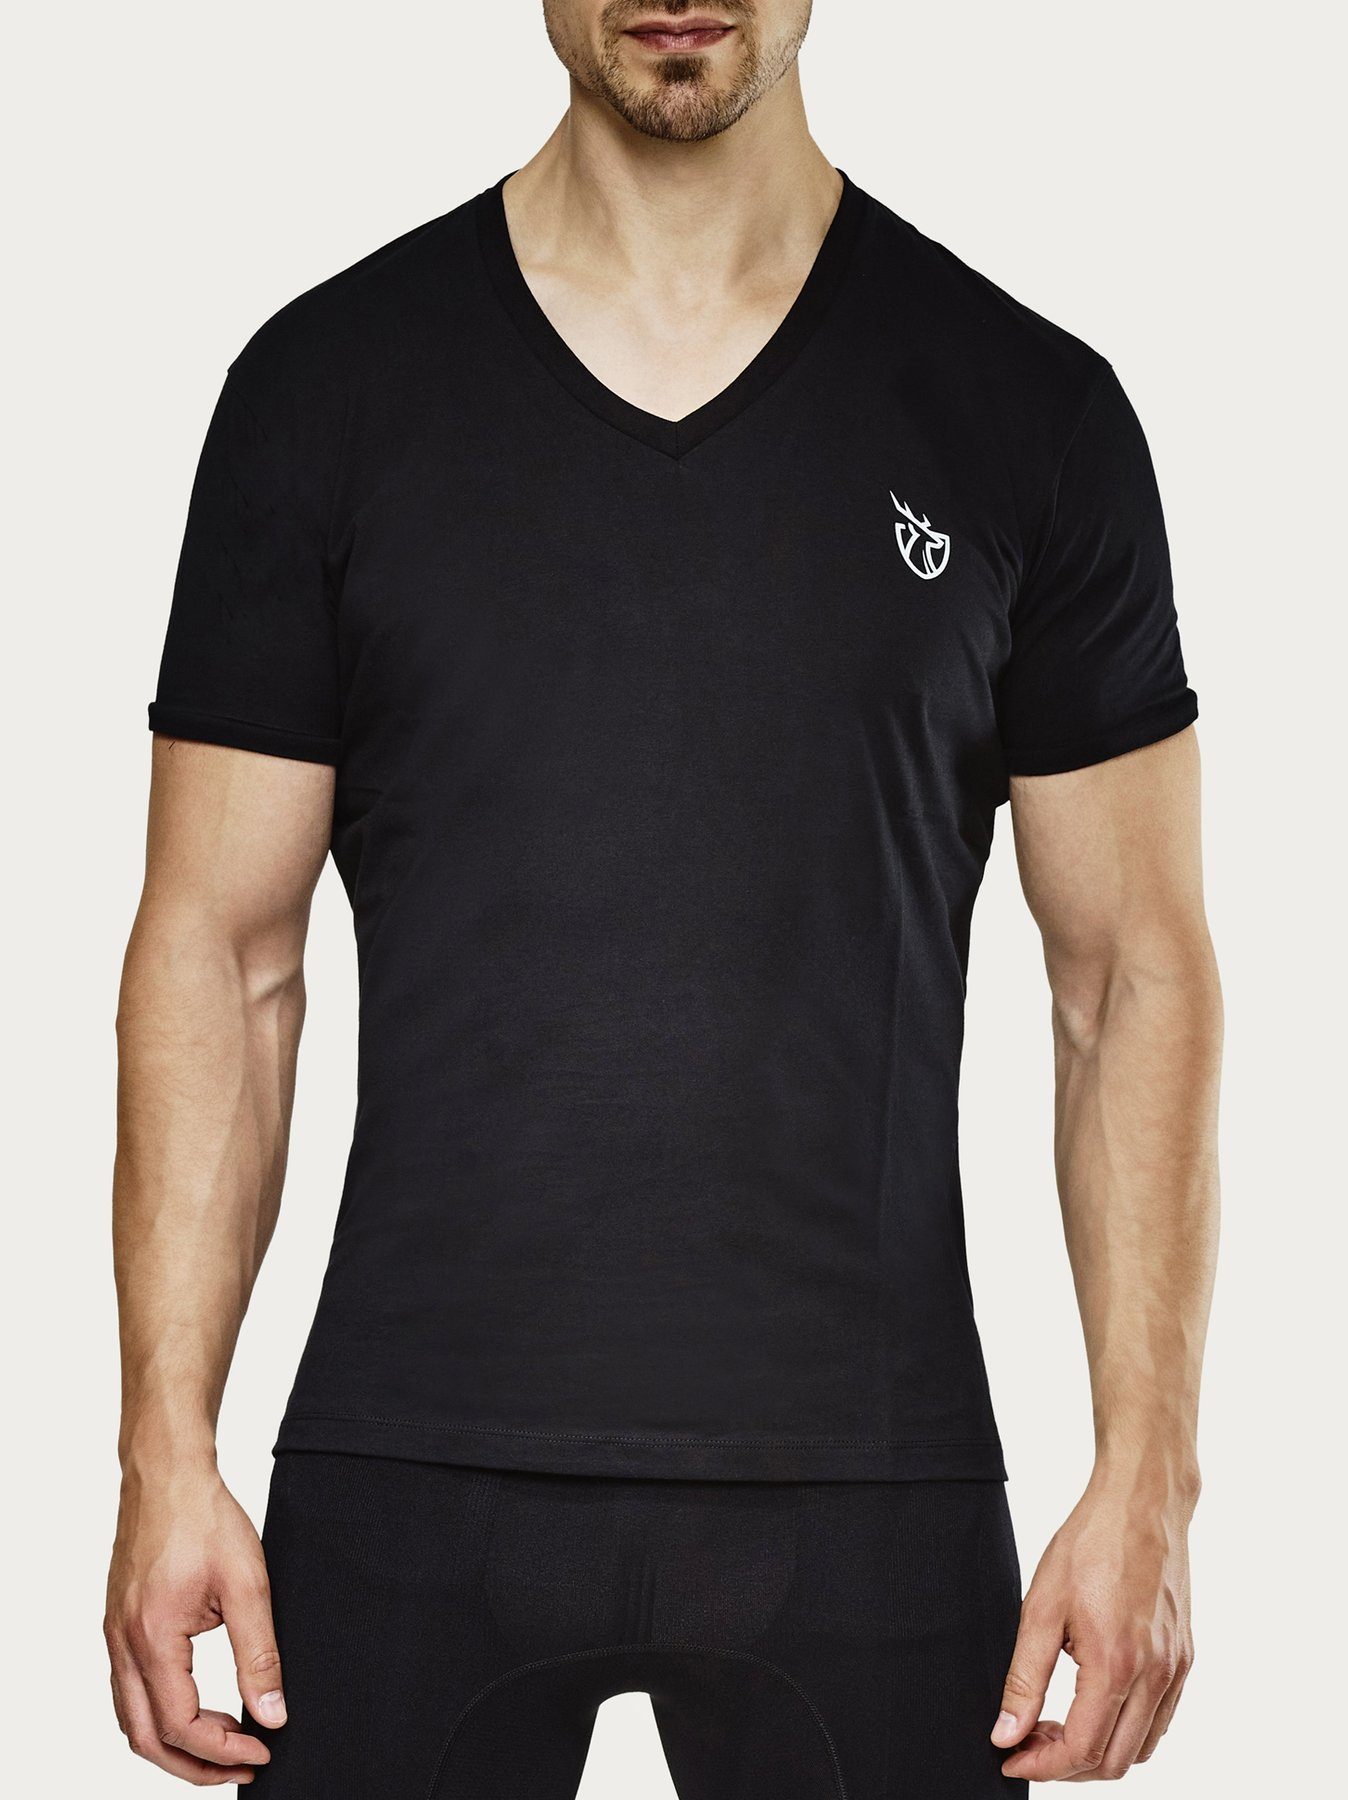 Strammer Max Basic Schwarz mit T-Shirt Logo Performance®